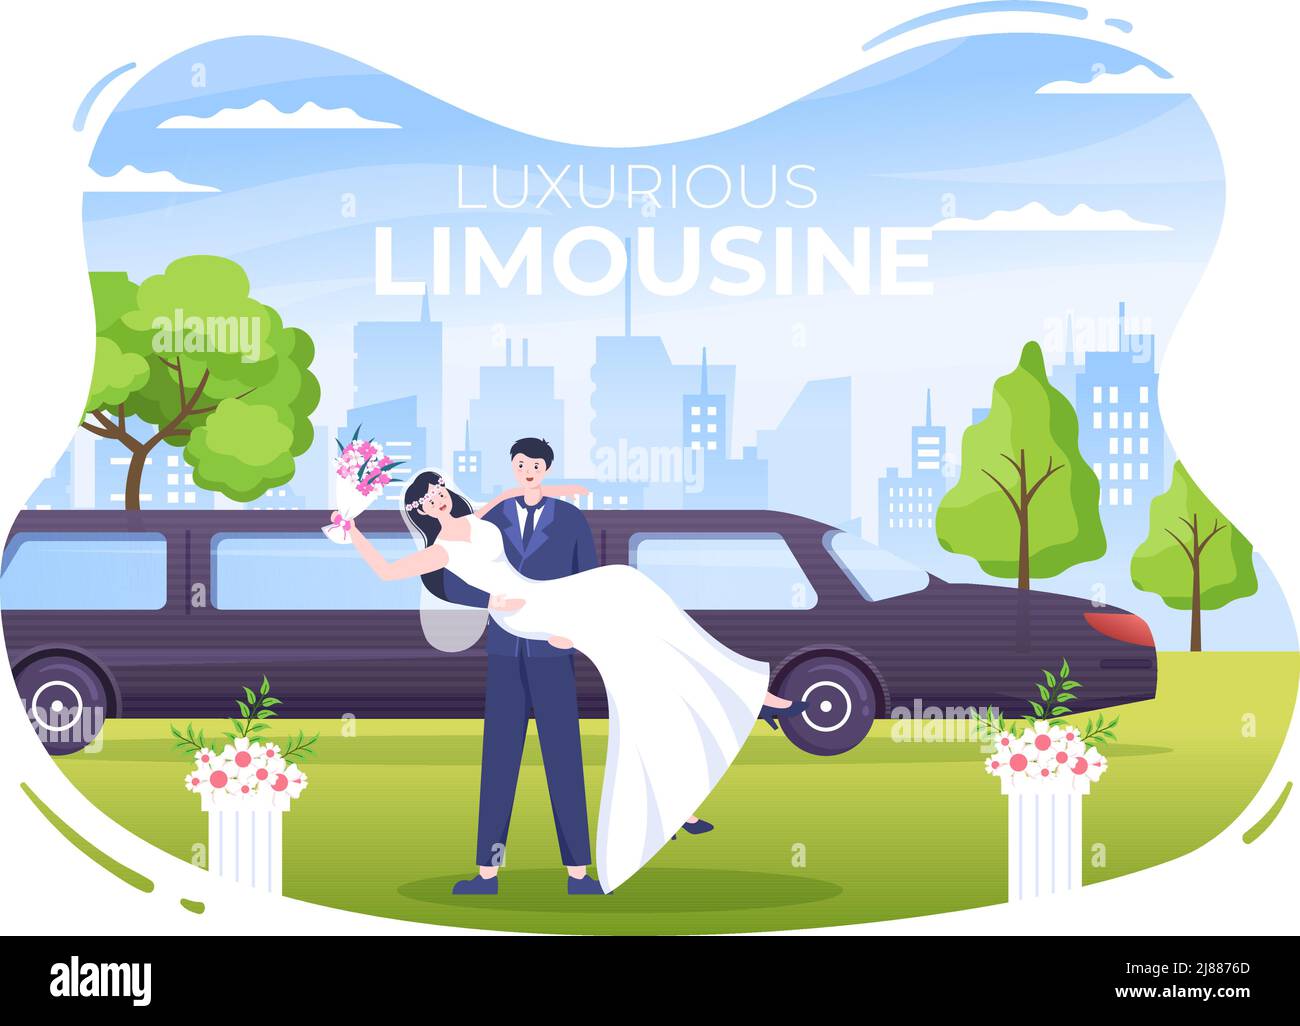 Limousine auf Hochzeitszeremonie mit Bildern von Auto, Männern und Frauen tragen verheiratete Kleider in flacher Cartoon-Illustration Stock Vektor